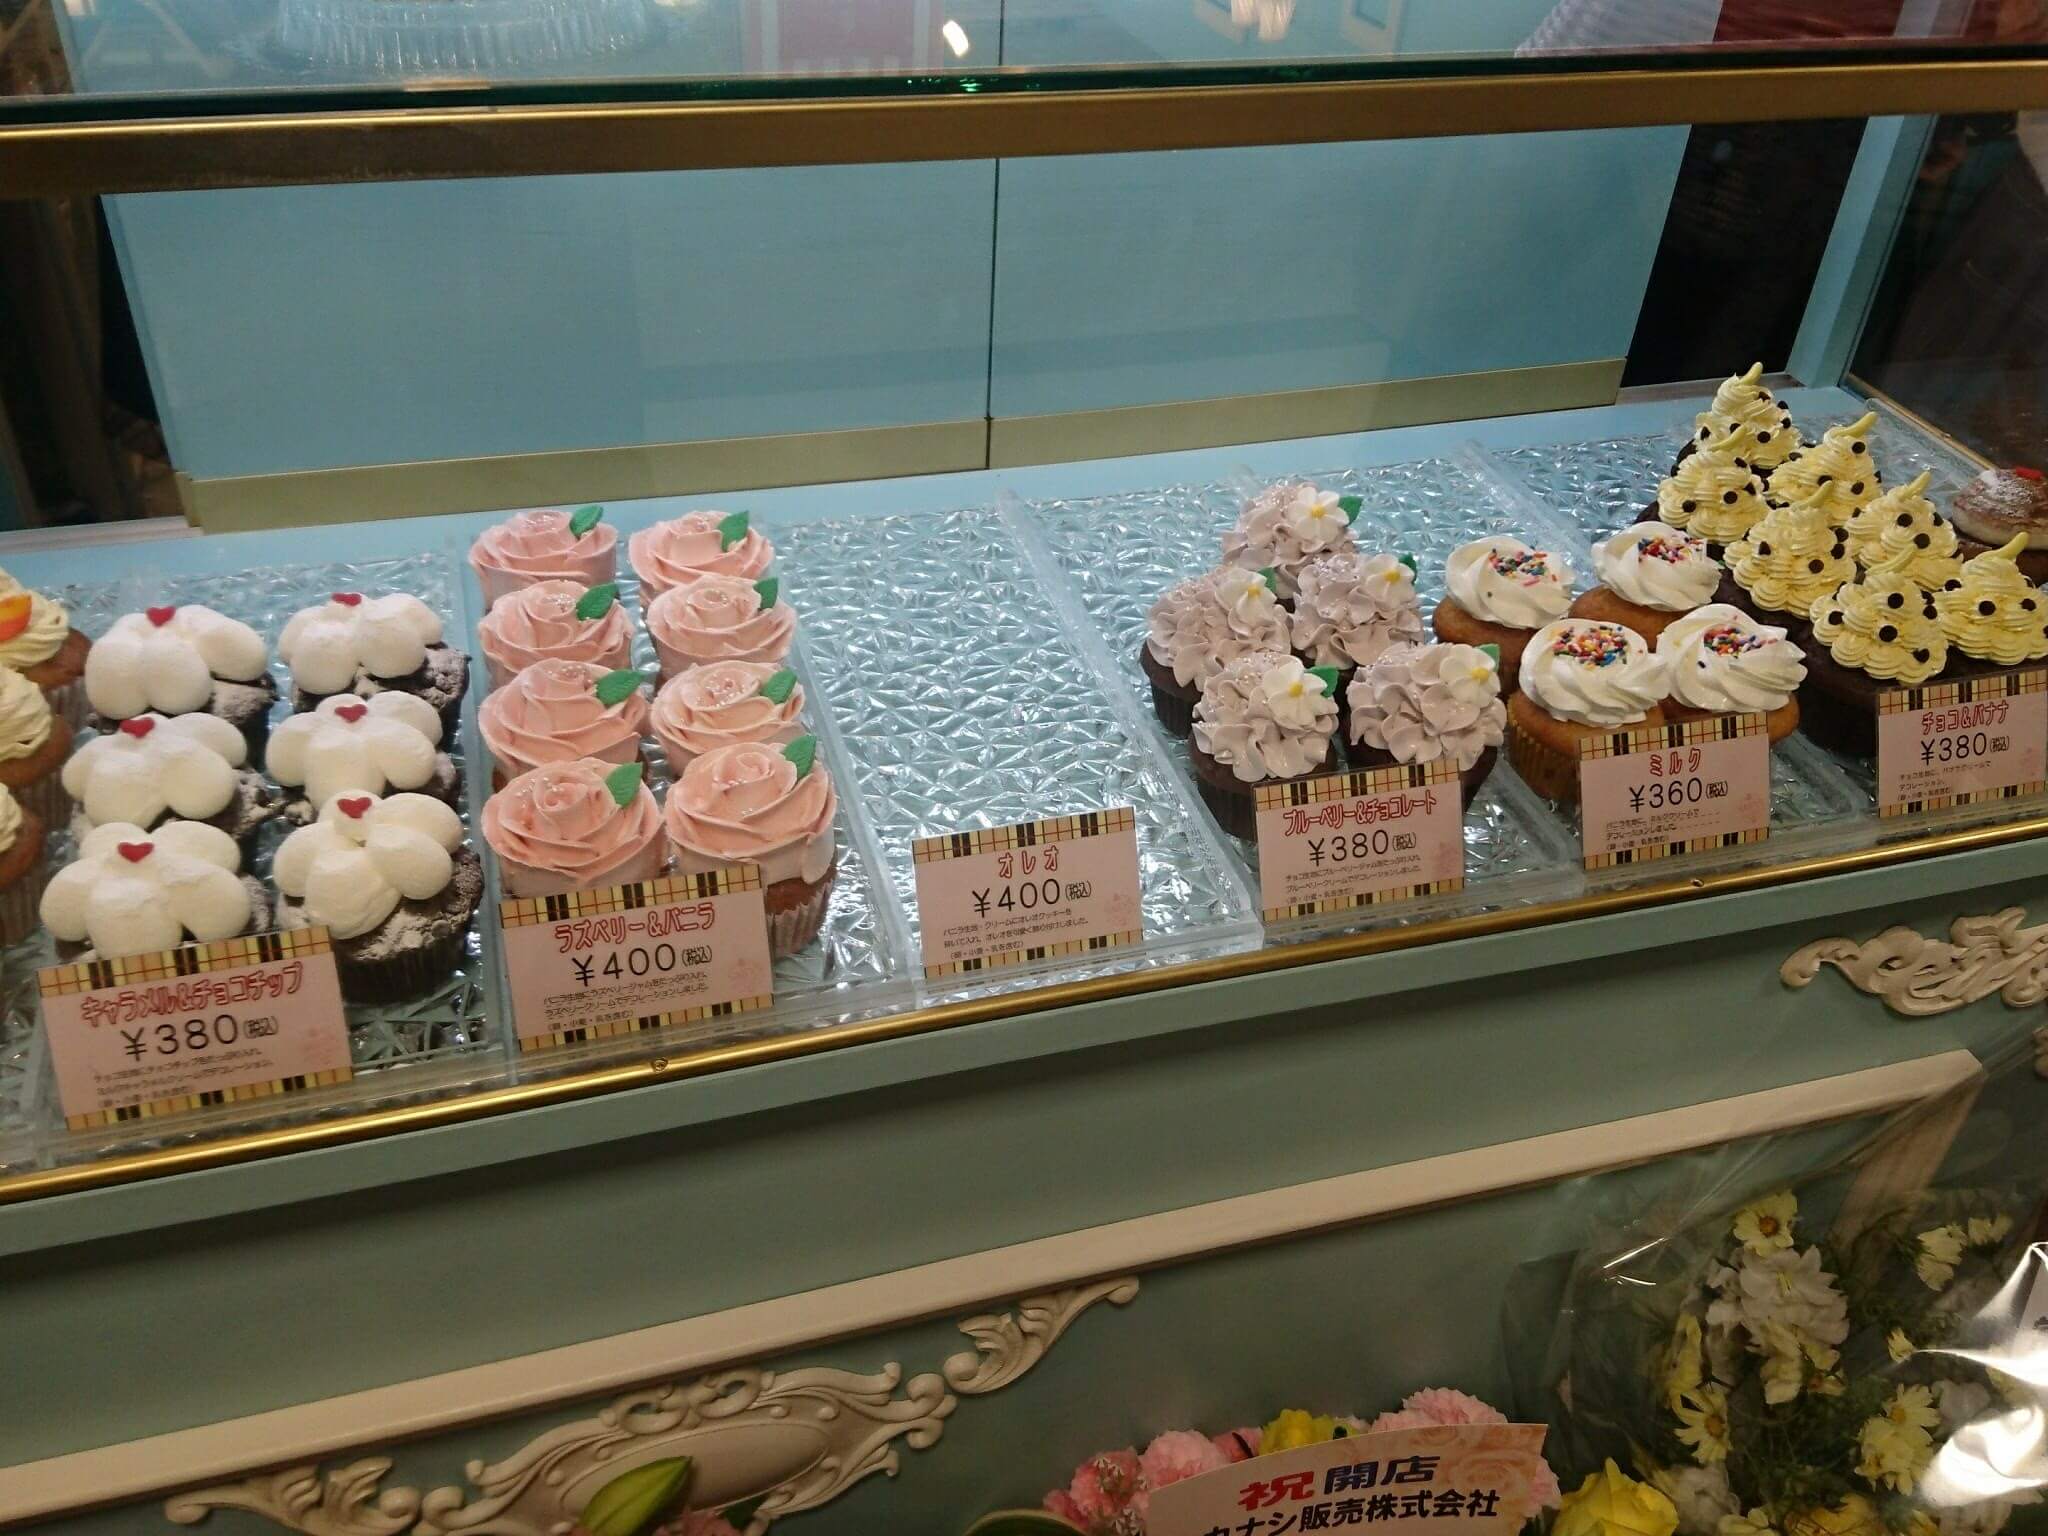 サリーズカップケーキ サッポロファクトリー店 円山裏参道の人気カップケーキ店がサッポロファクトリーにオープン さぁ自由をはじめようか